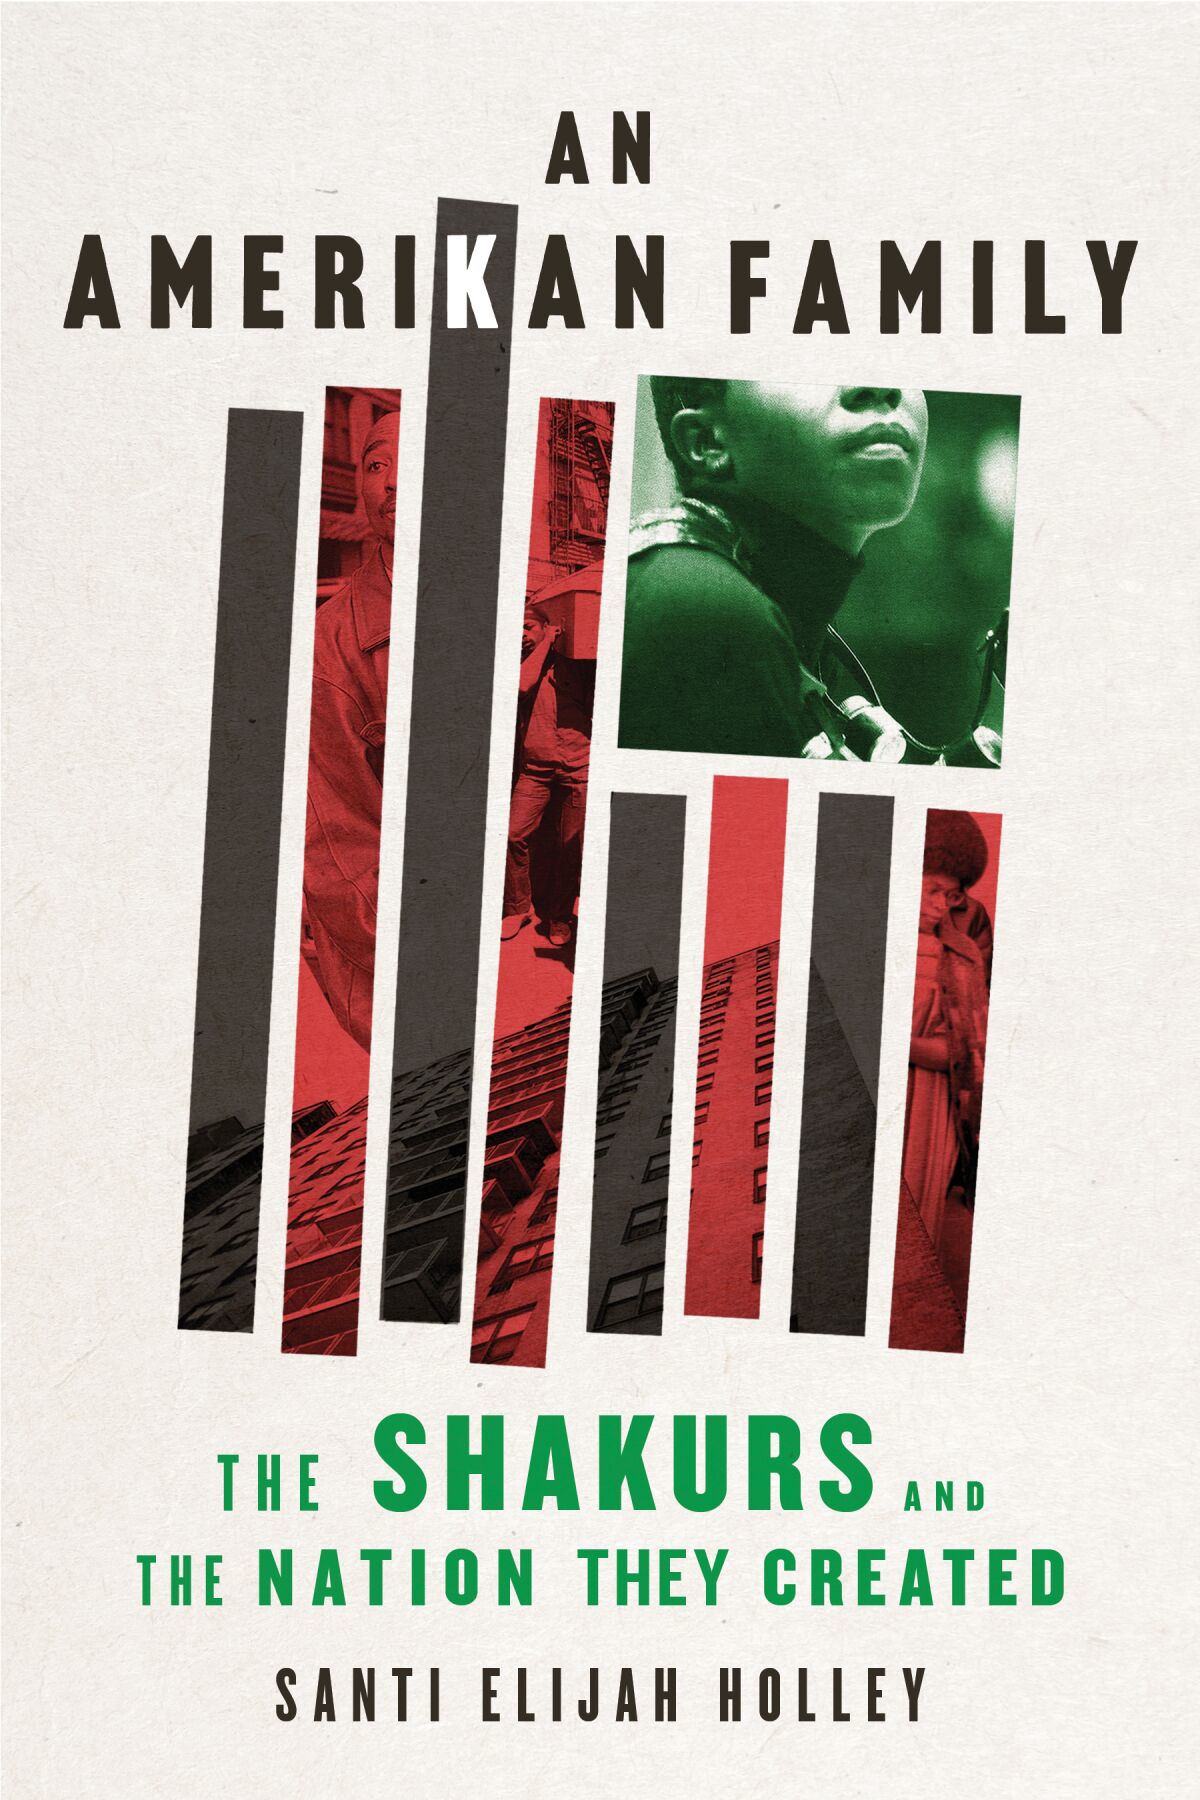 एक अमेरिकी परिवार: शाकुर और राष्ट्र जो उन्होंने सैंटी एलियाह होली द्वारा बनाया